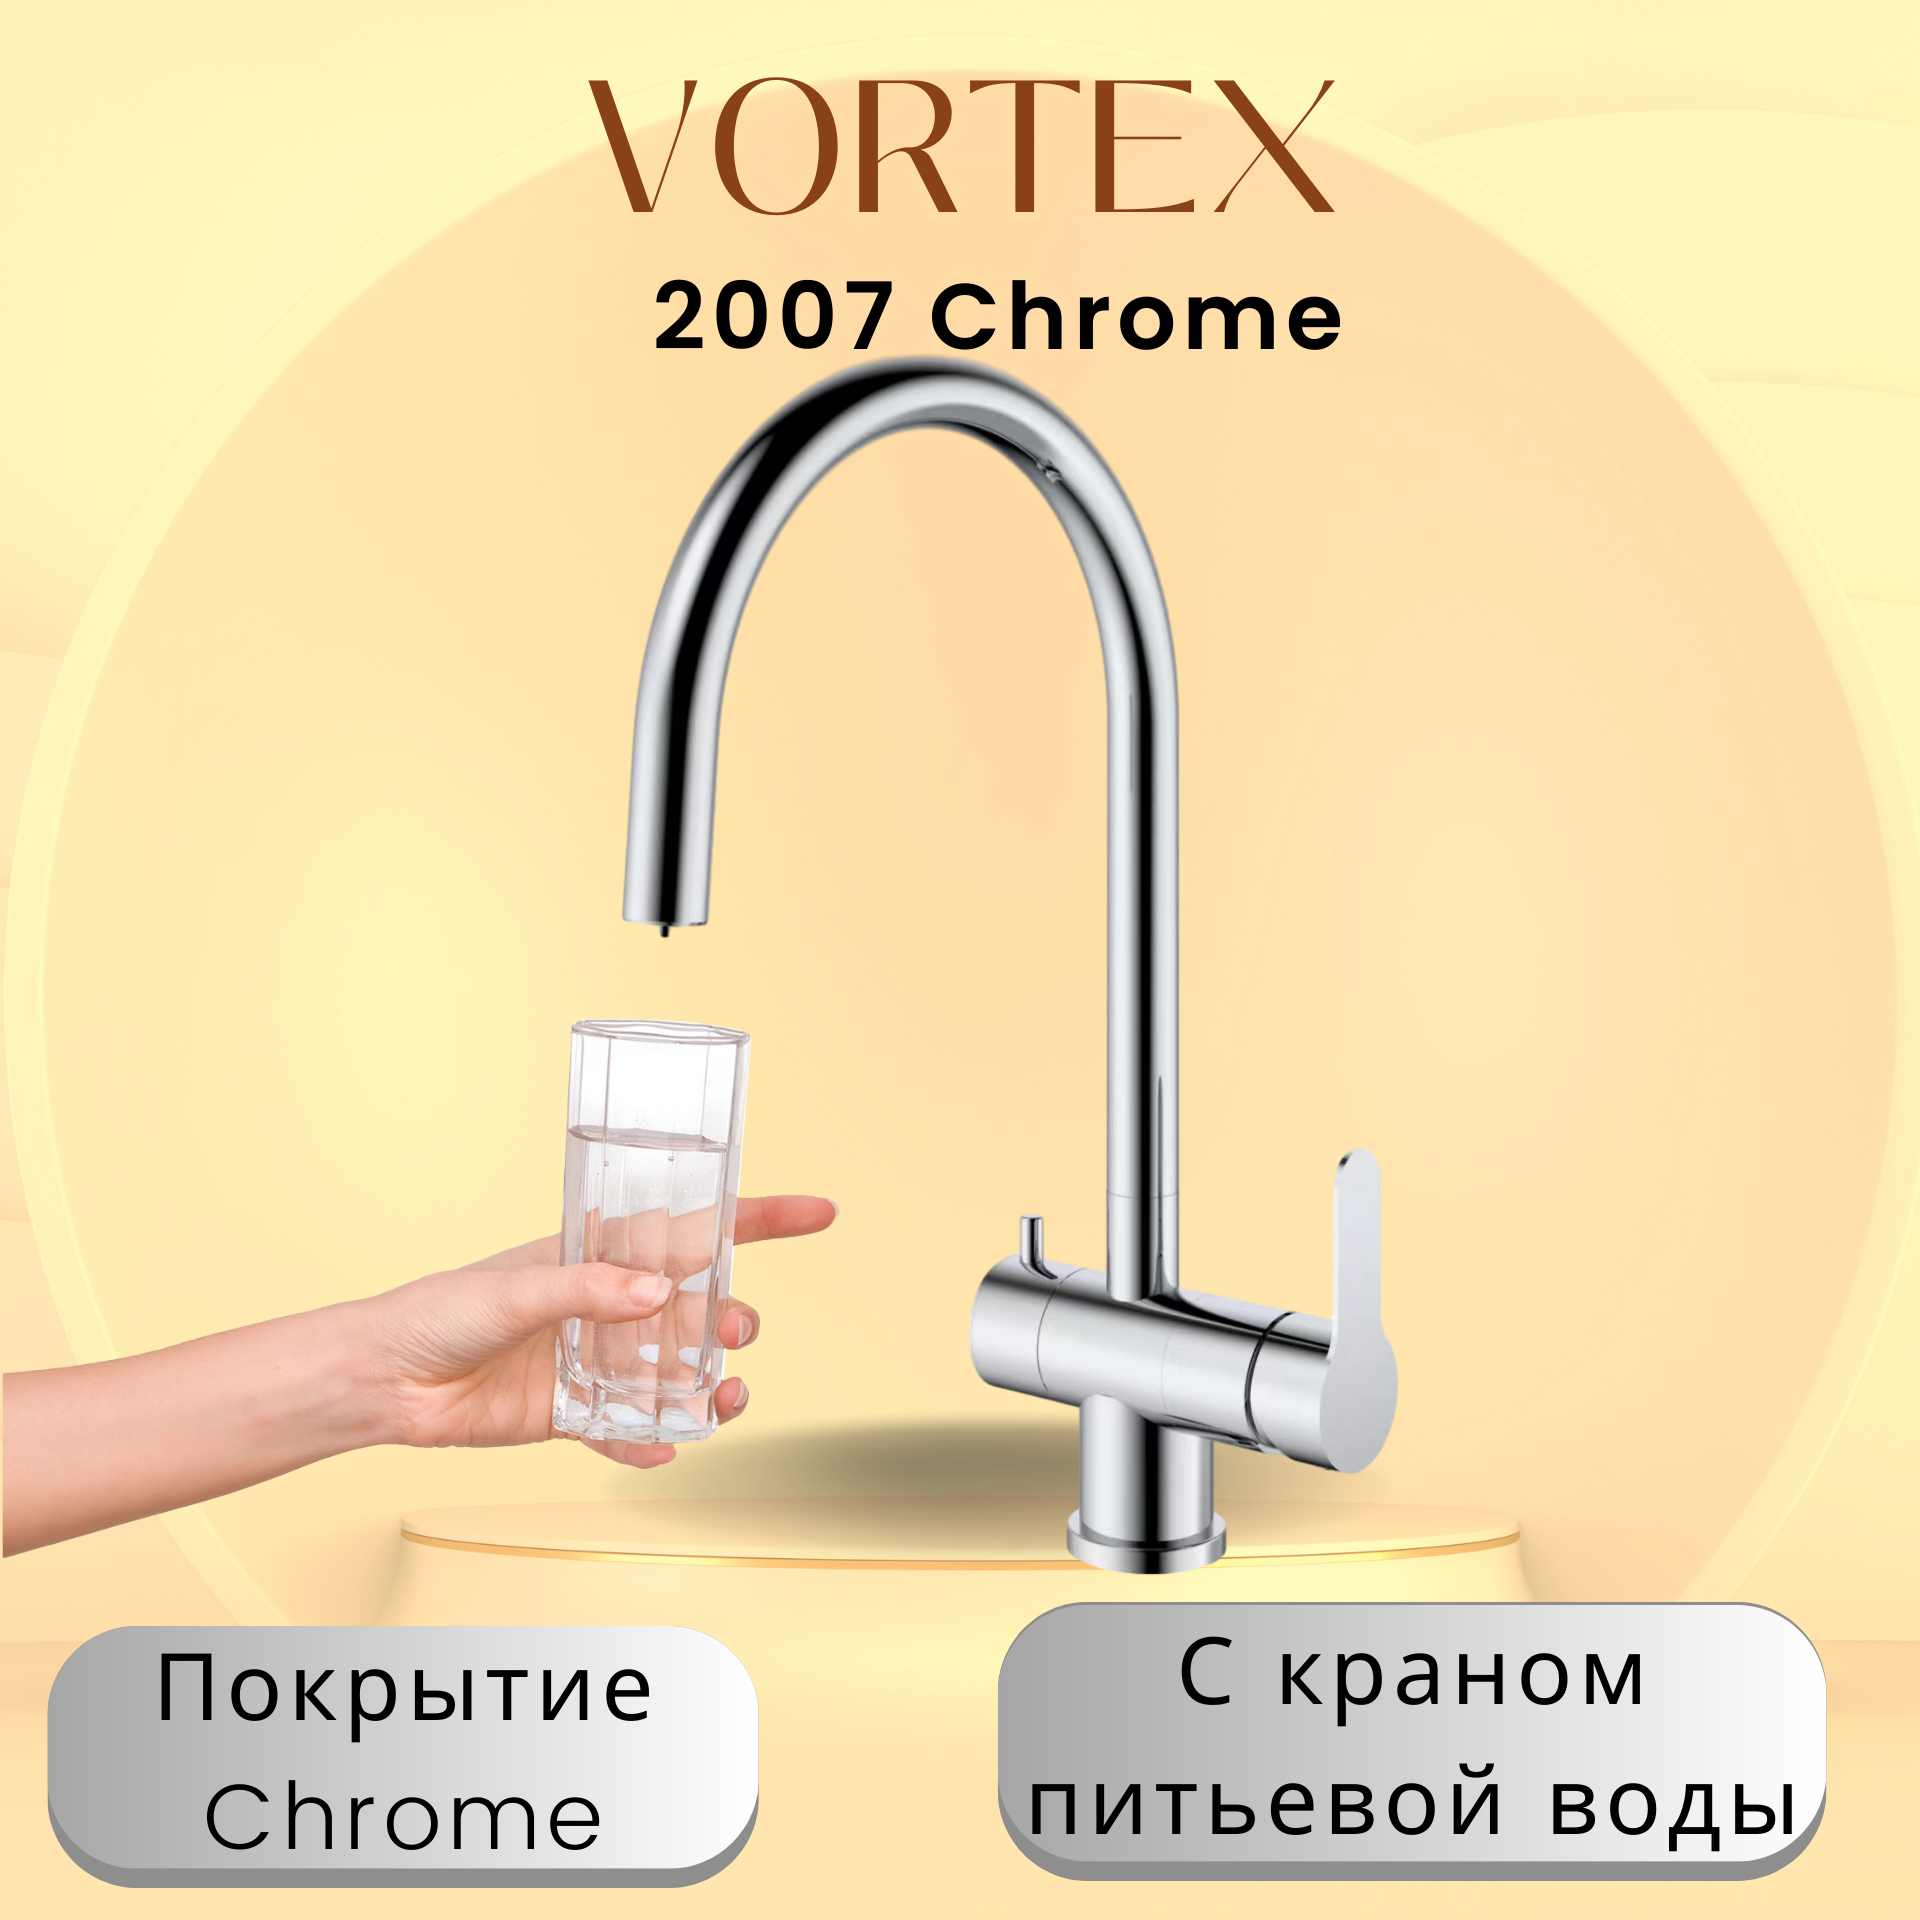 Кухонный смеситель с краном питьевой воды Vortex VX-2007 Chrome смеситель для кухни elghansa praktic chrome 5902660